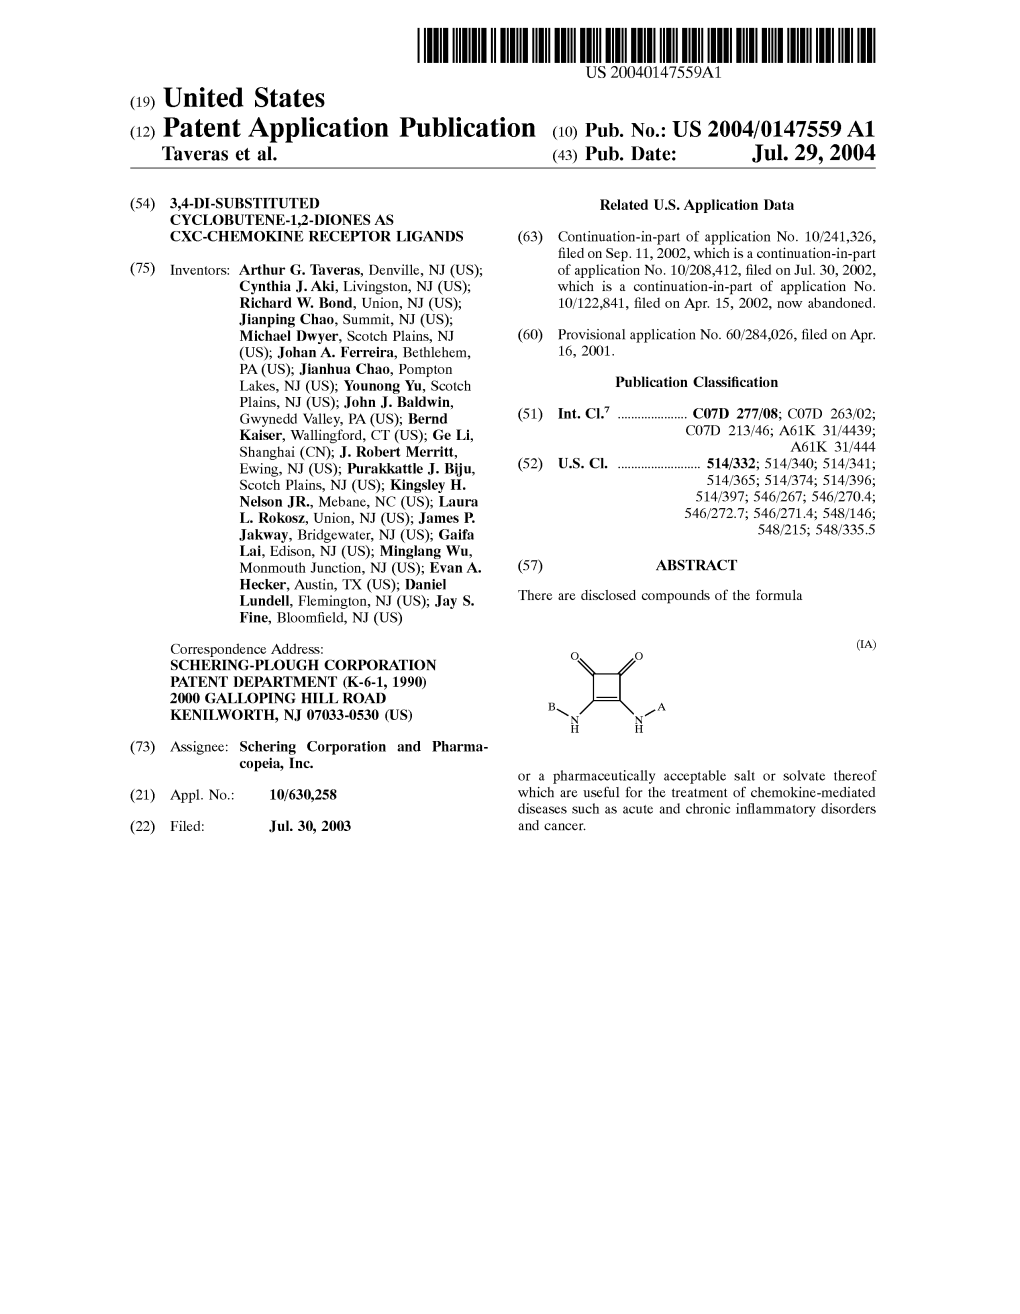 (12) Patent Application Publication (10) Pub. No.: US 2004/0147559 A1 Taveras Et Al